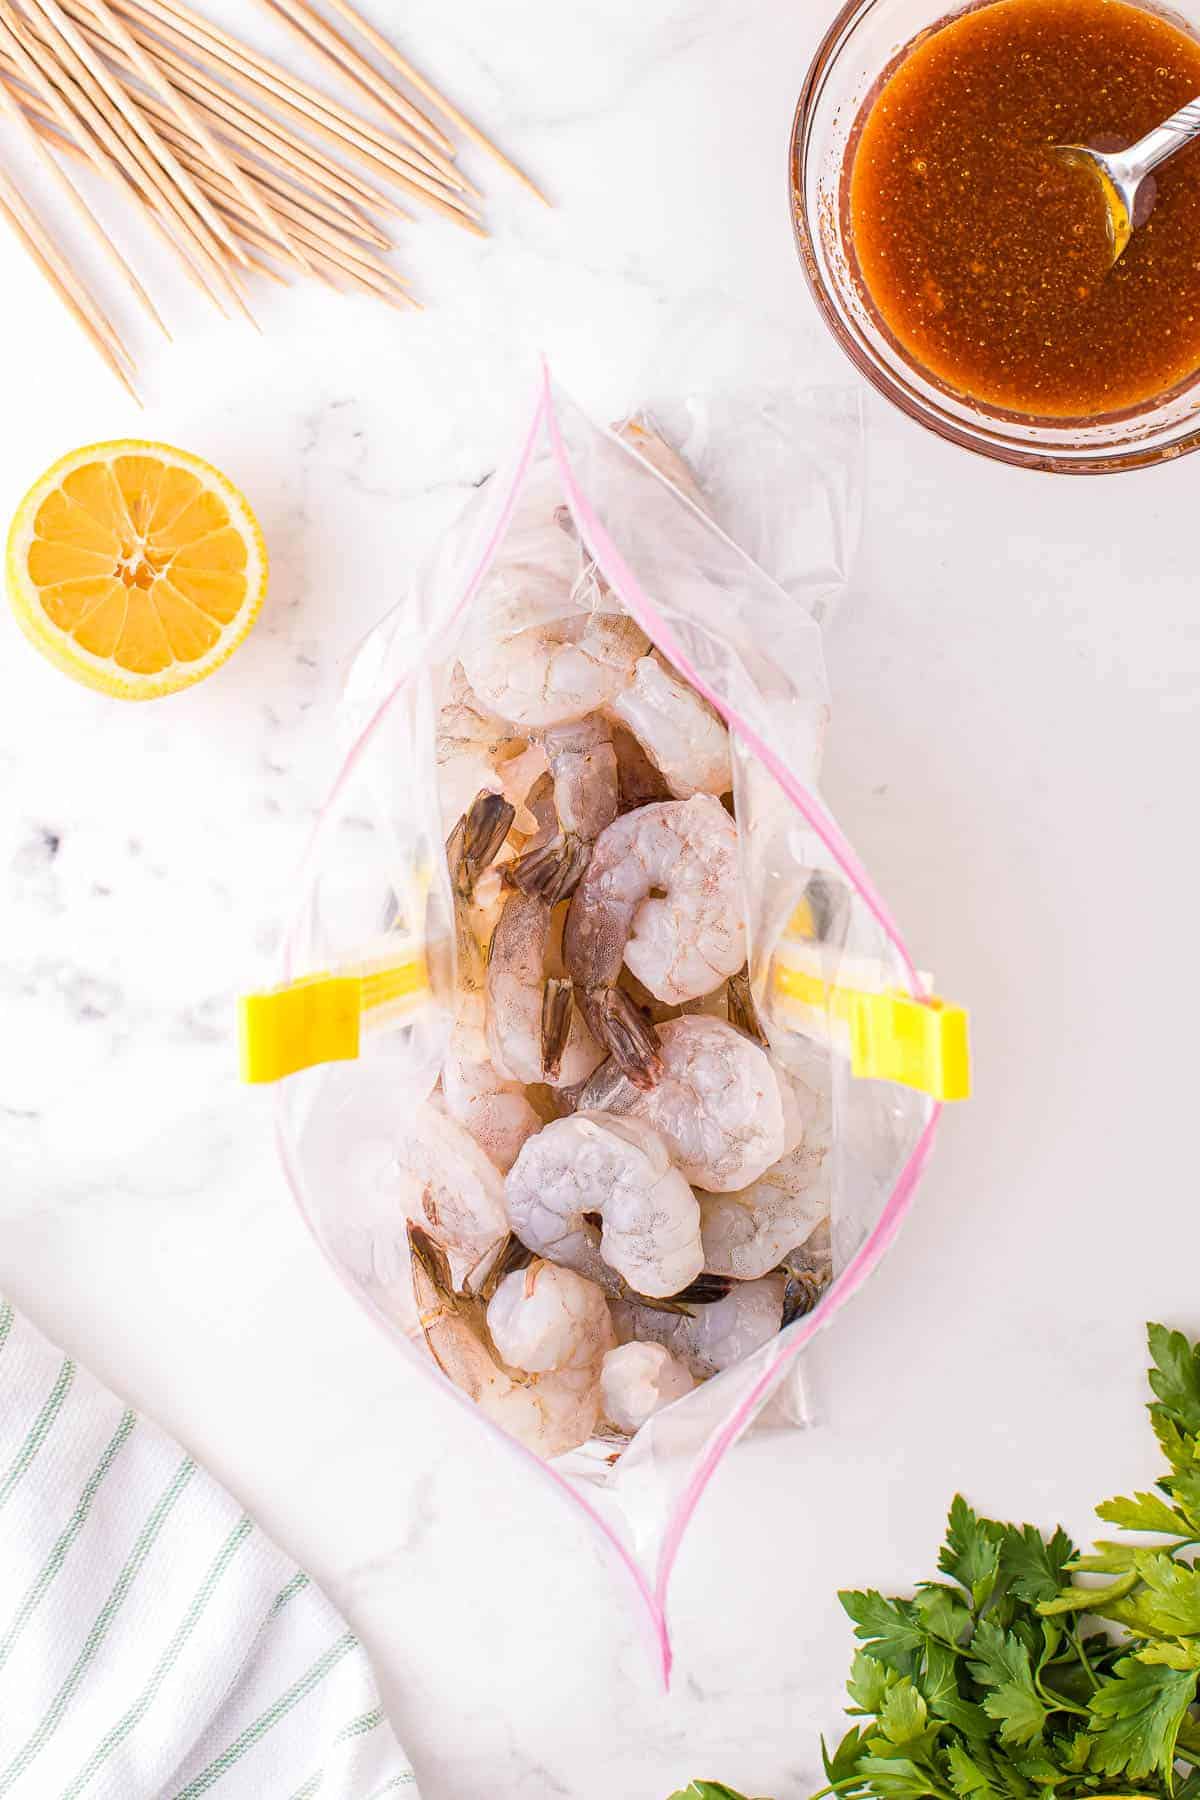 Raw shrimp in ziploc bag